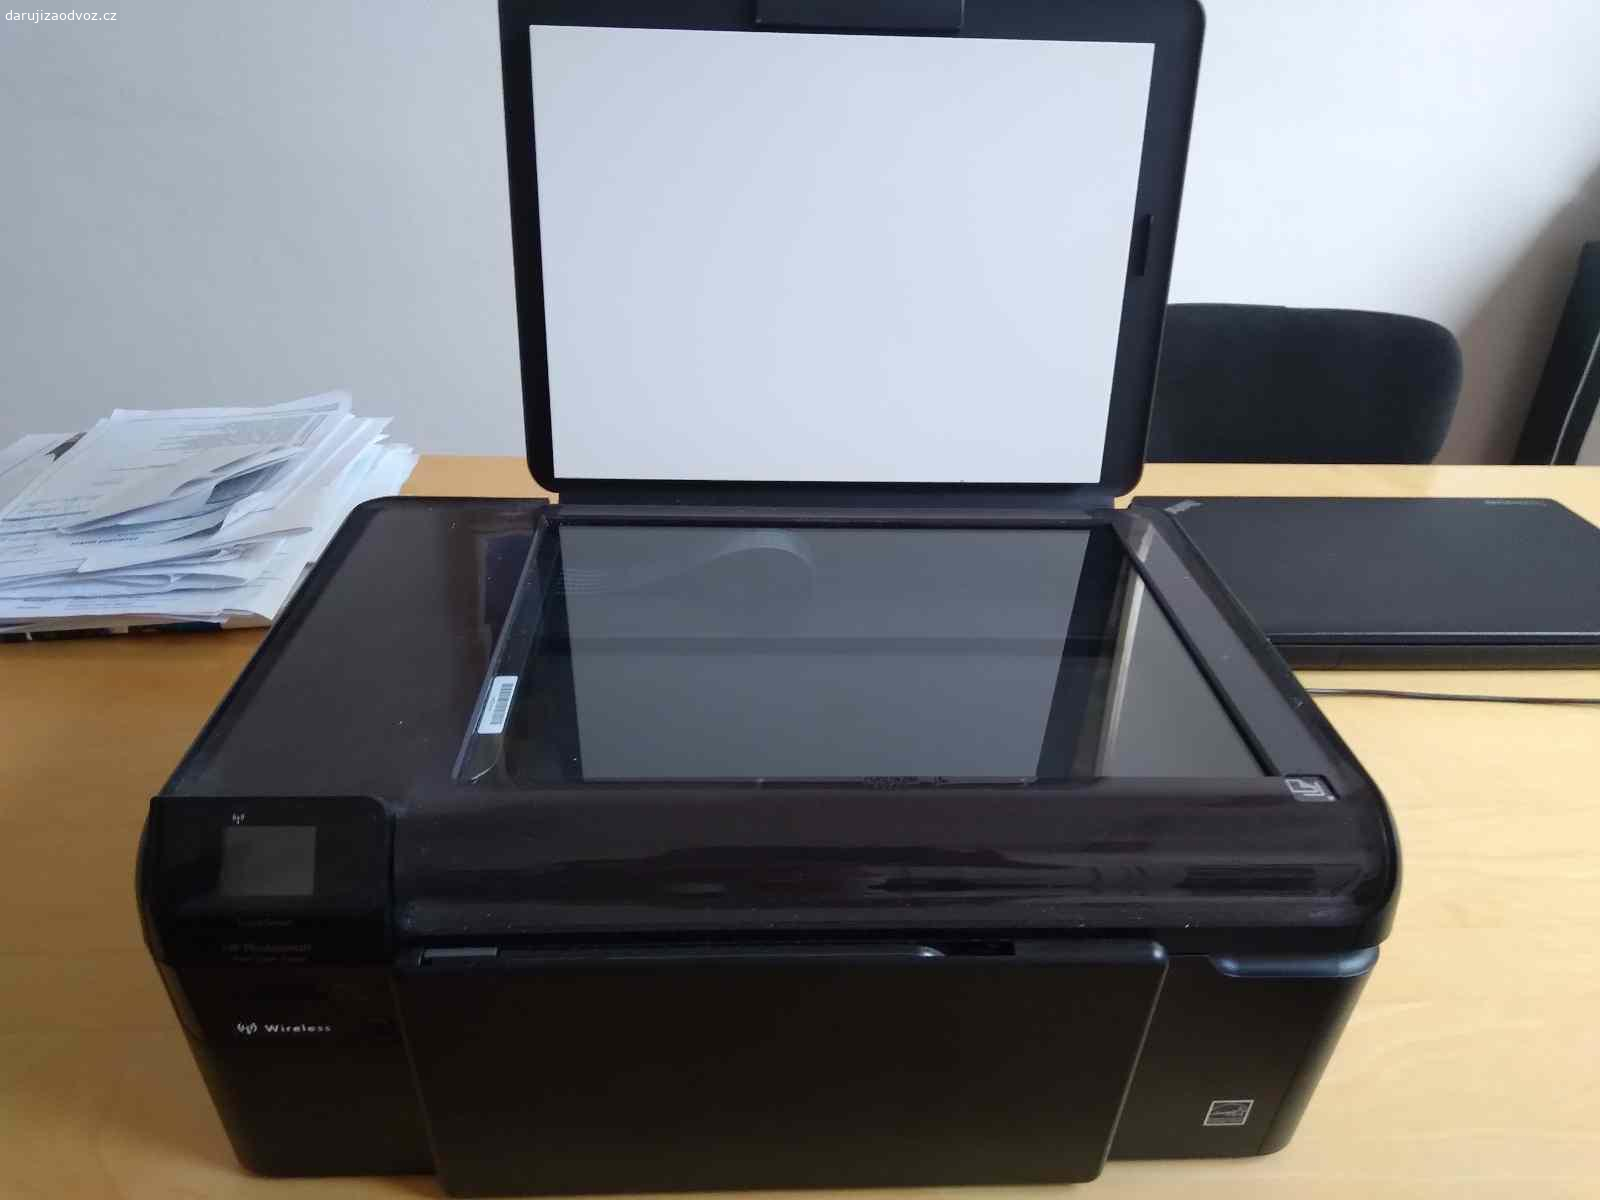 Daruji tiskárnu HP končím s podnikáním. Daruji černou inkoustovou tiskárnu HP, funkční, 43x28x16.